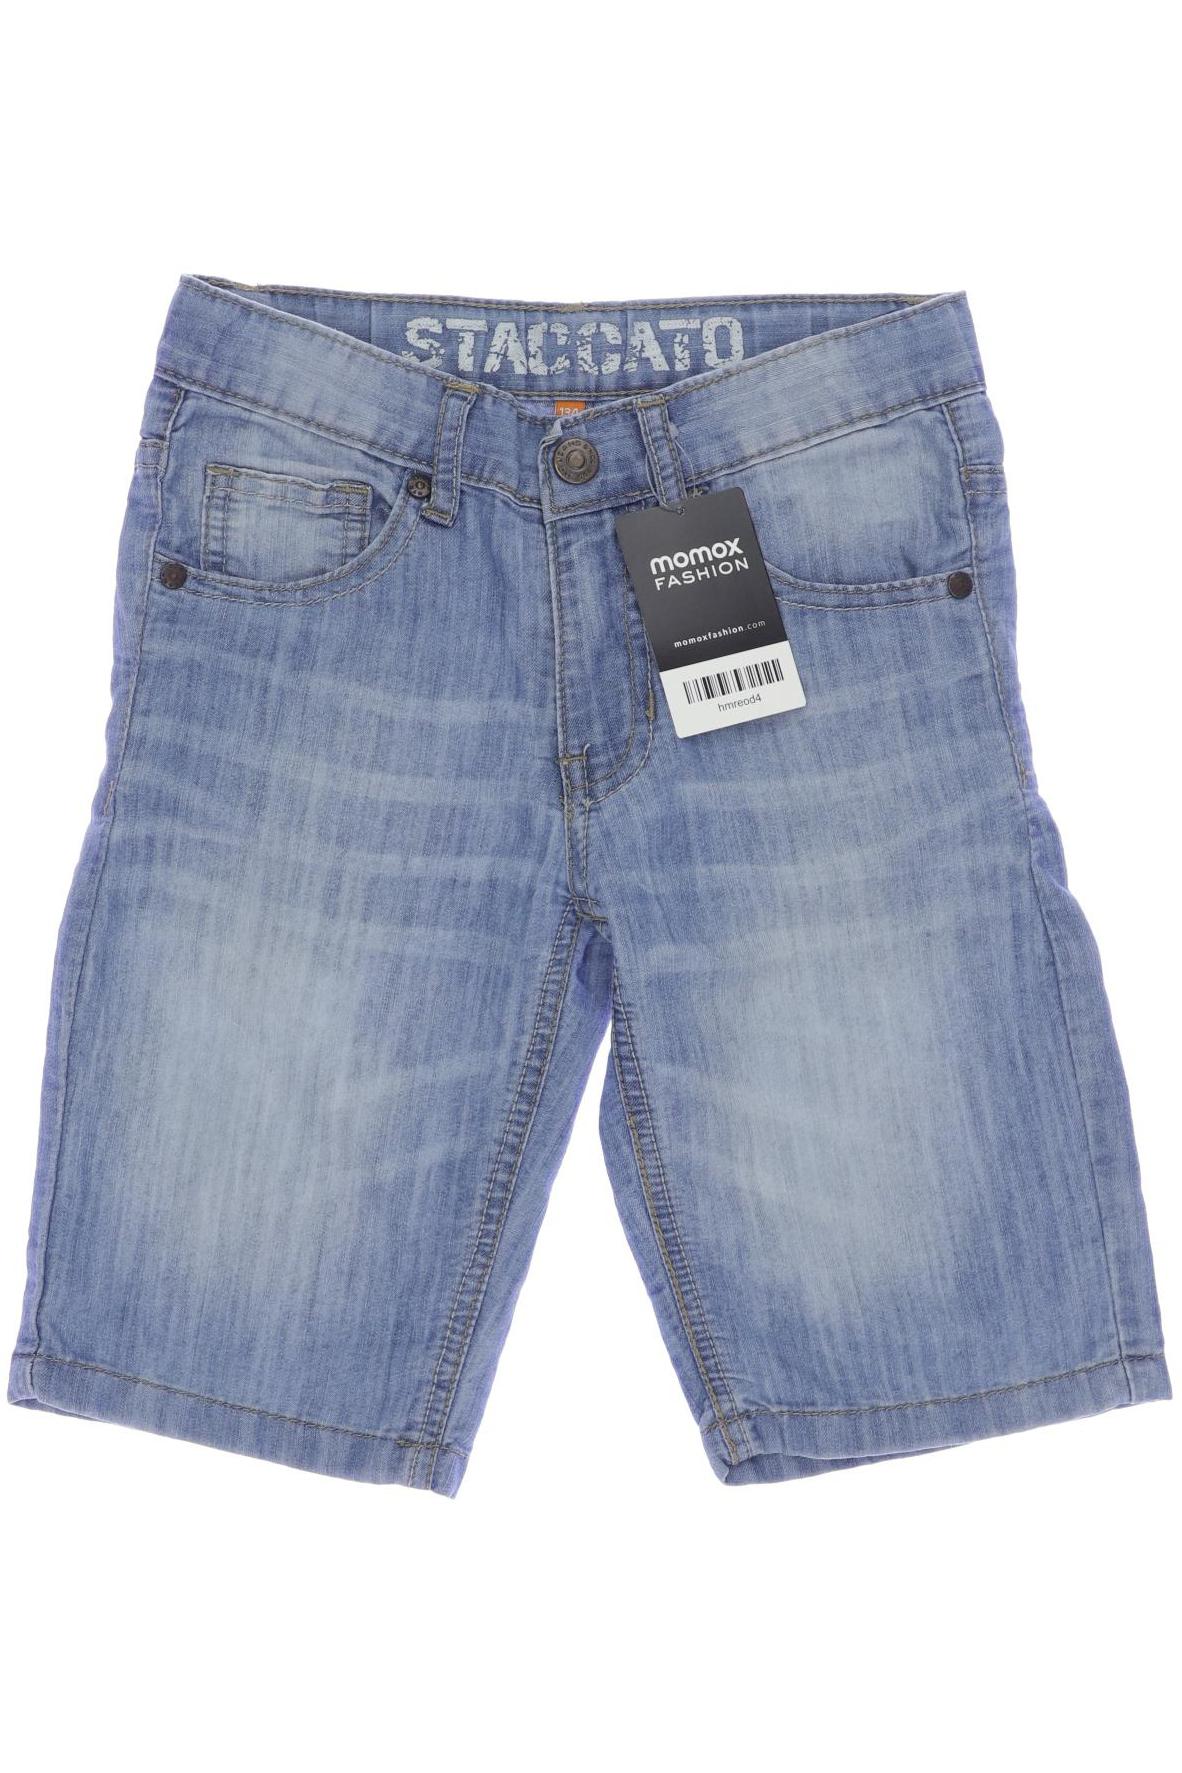 Staccato Jungen Shorts, hellblau von Staccato